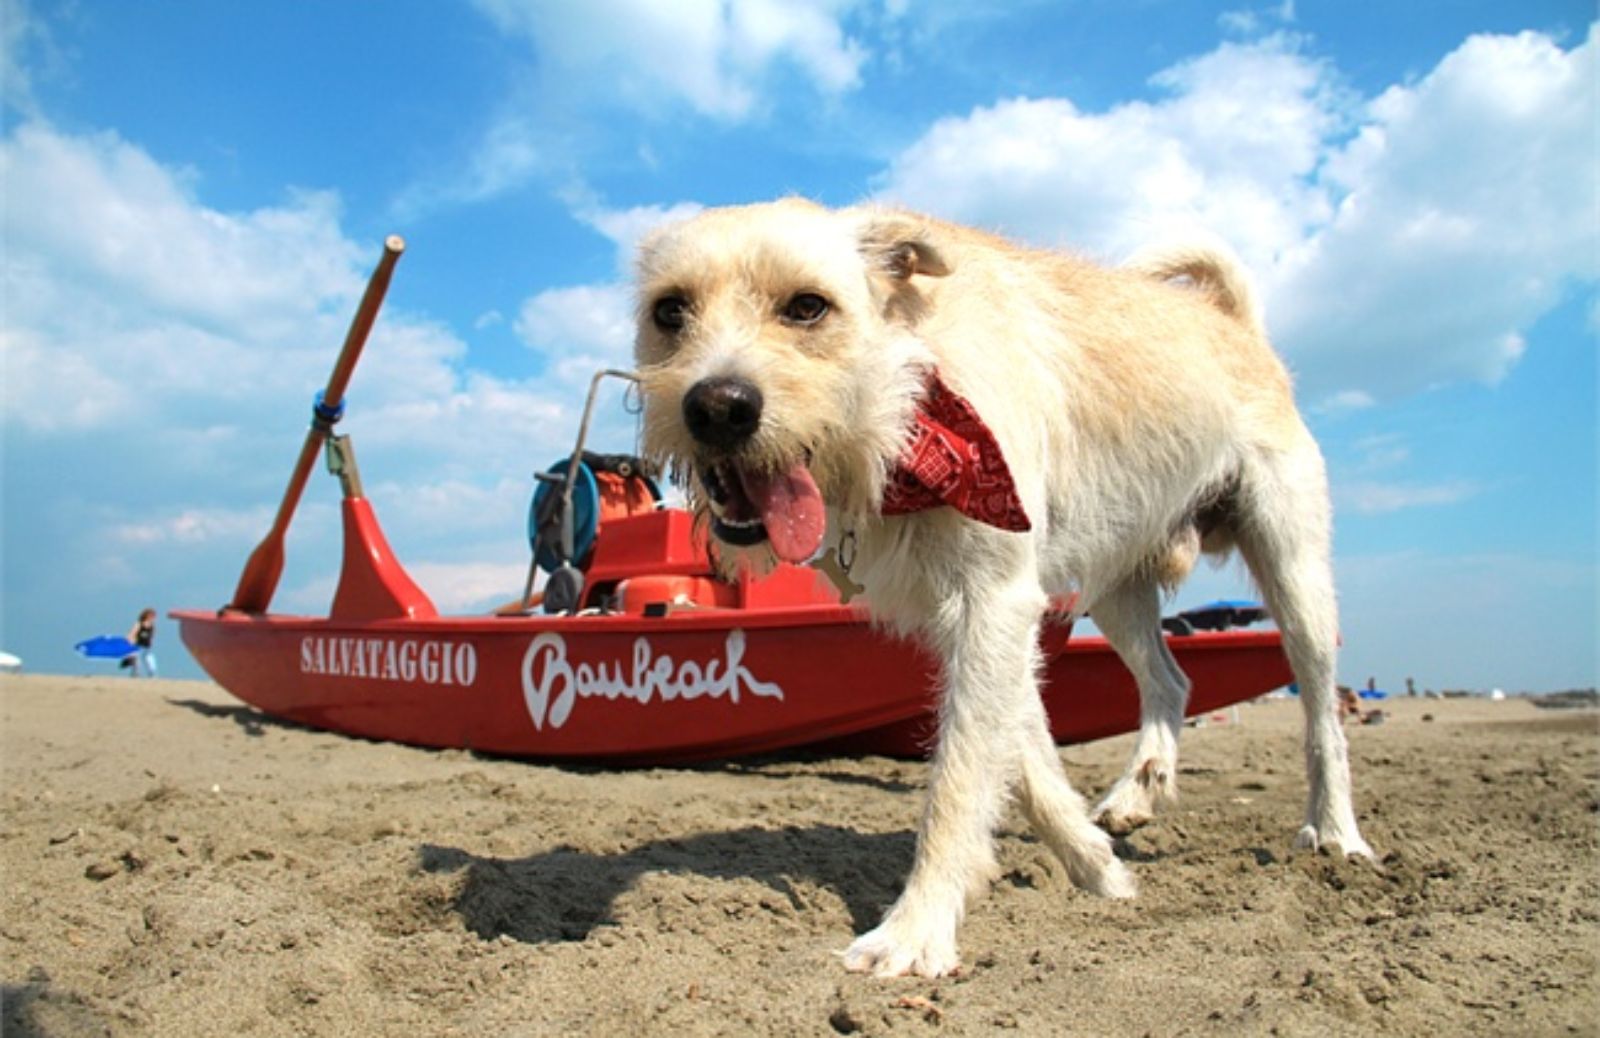 I 5 consigli per far star bene il cane in spiaggia 